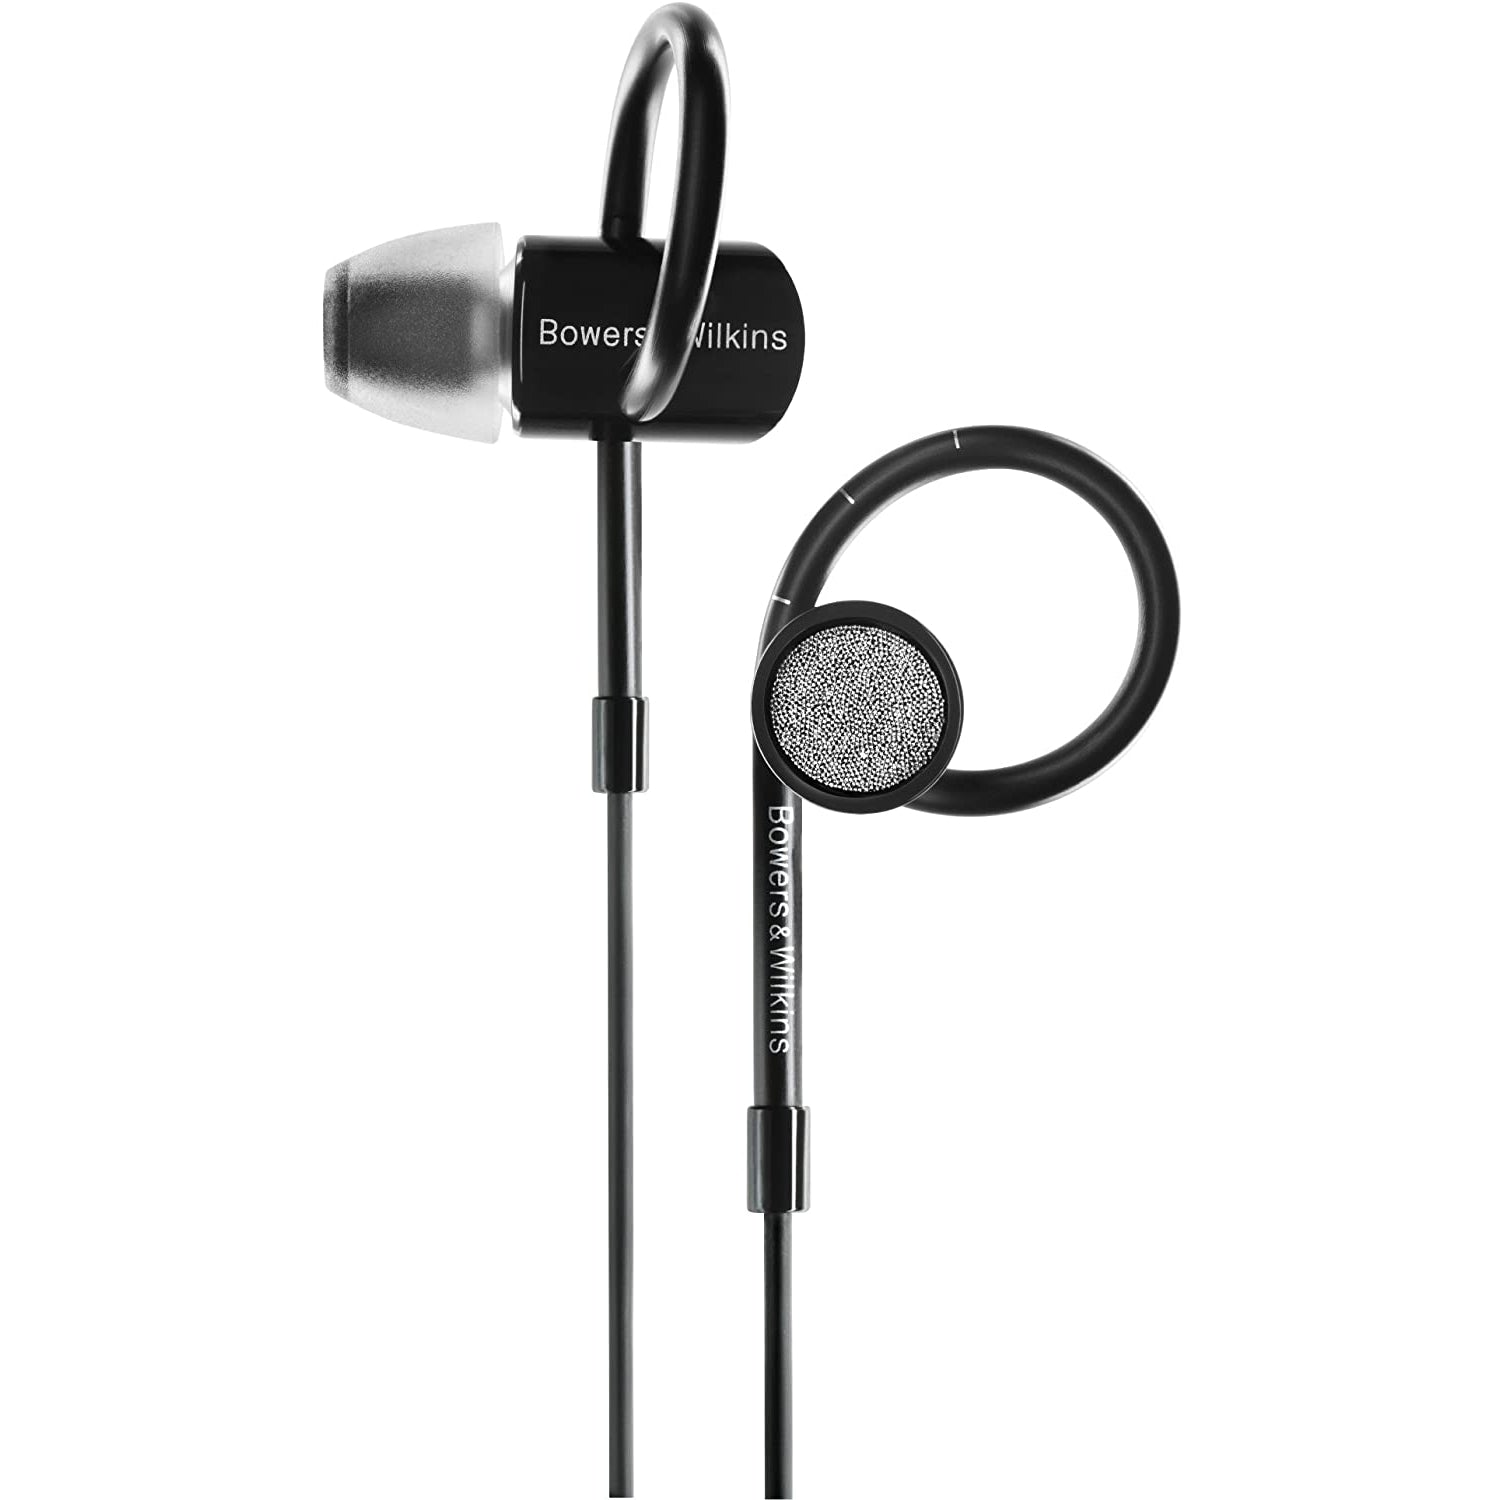 Bowers & Wilkins C5 Series 2 In-Ear Headphones, Black - Grade B